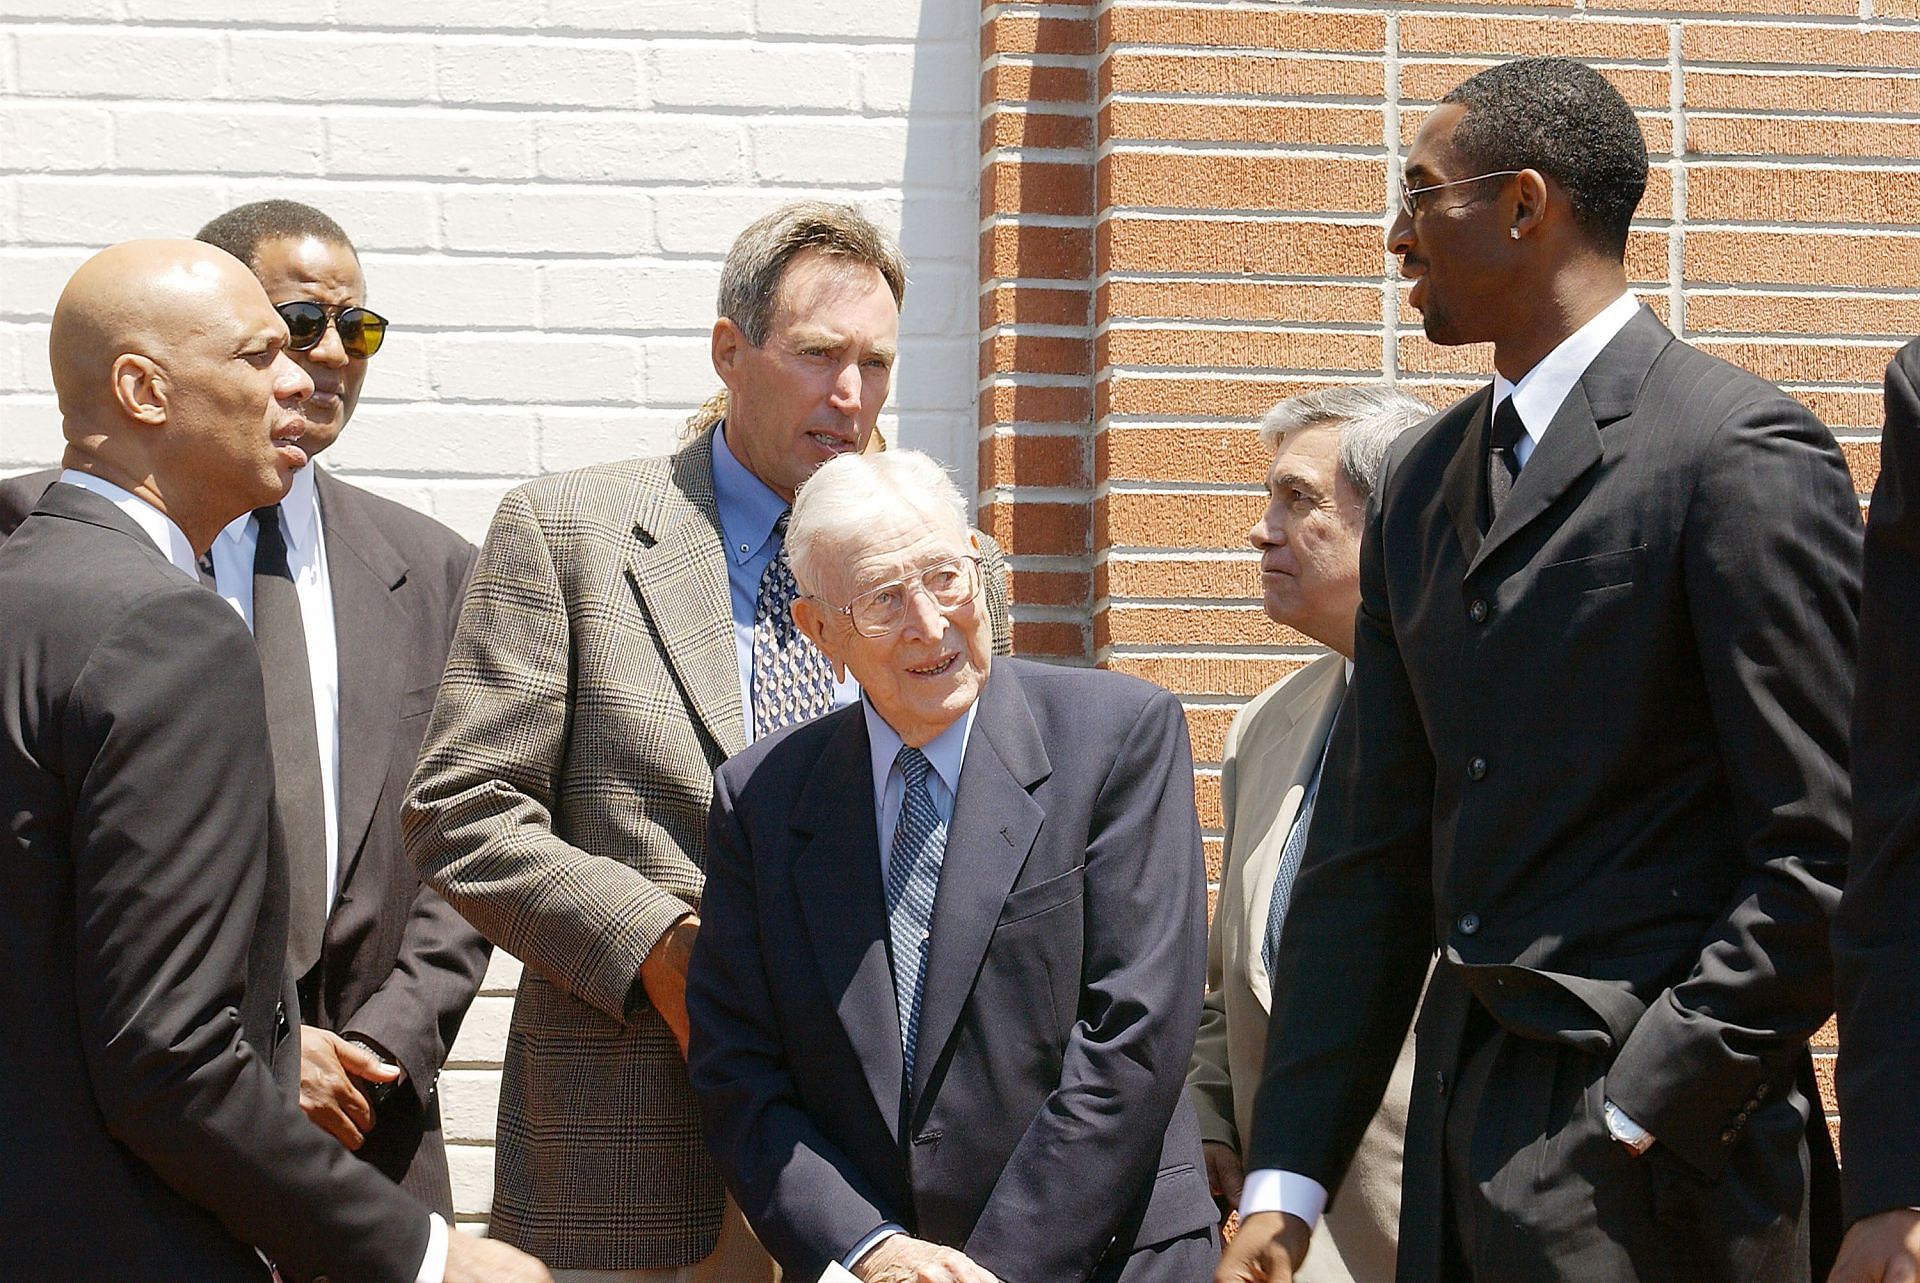 Kareem Abdul-Jabbar, John Wooden, and Kobe Bryant at a memorial.